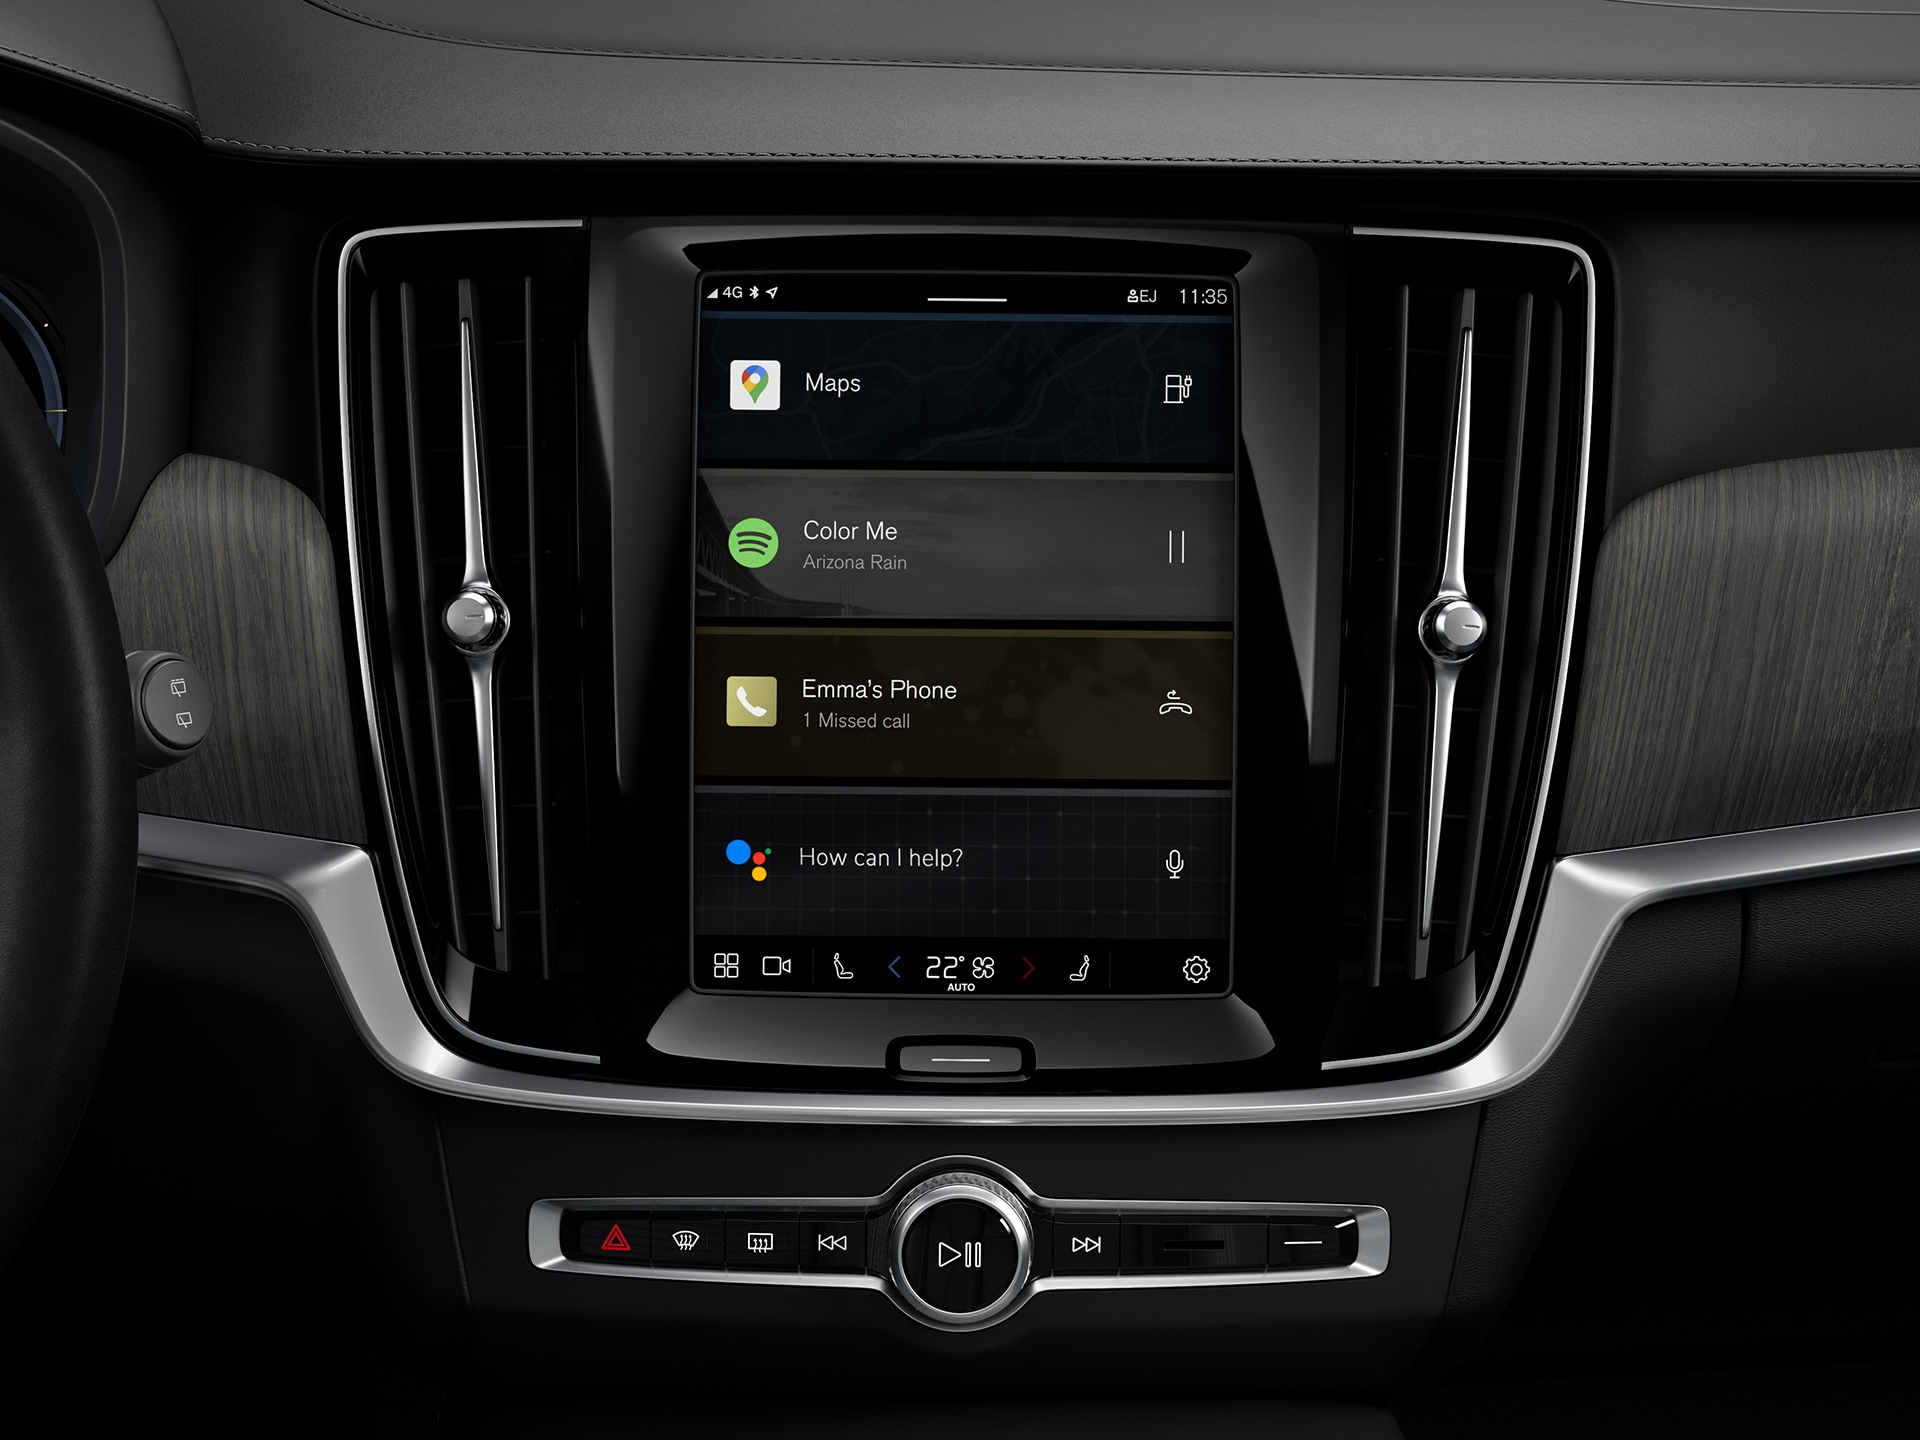 Централна конзола в комби Volvo, която показва вградената информационно-развлекателна система с Google.